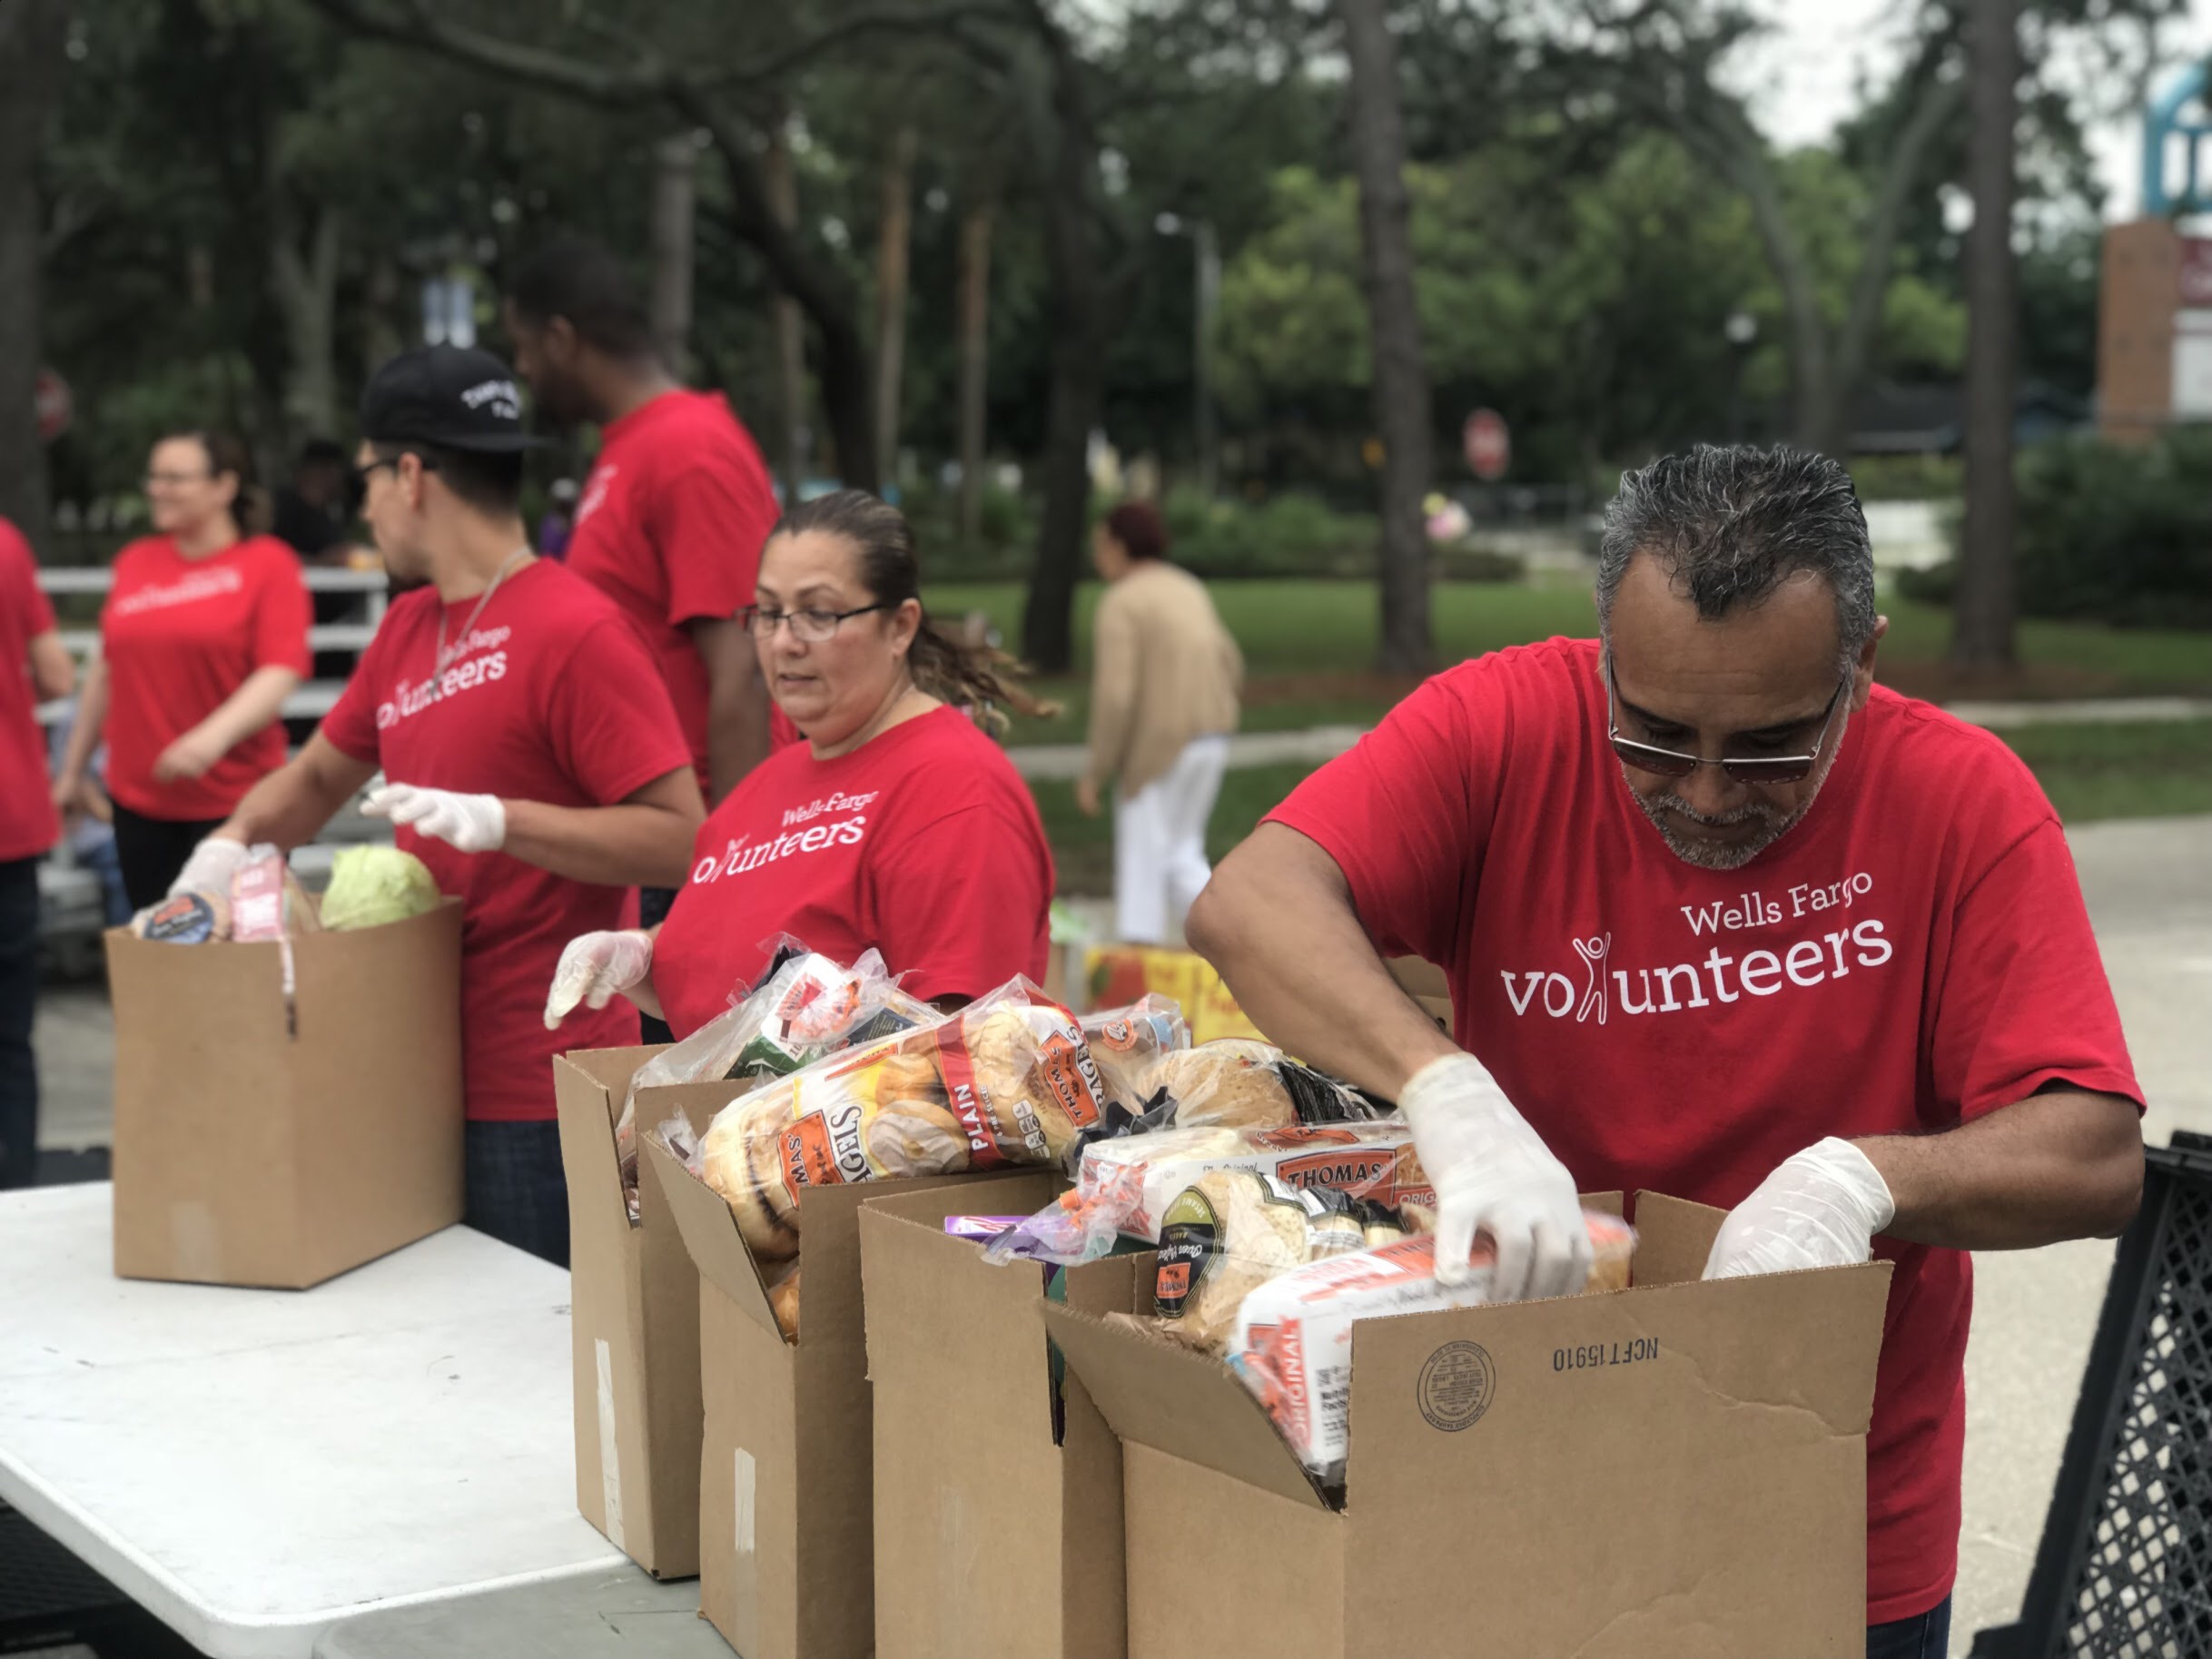 Volunteers sorting boxes of food outdoors